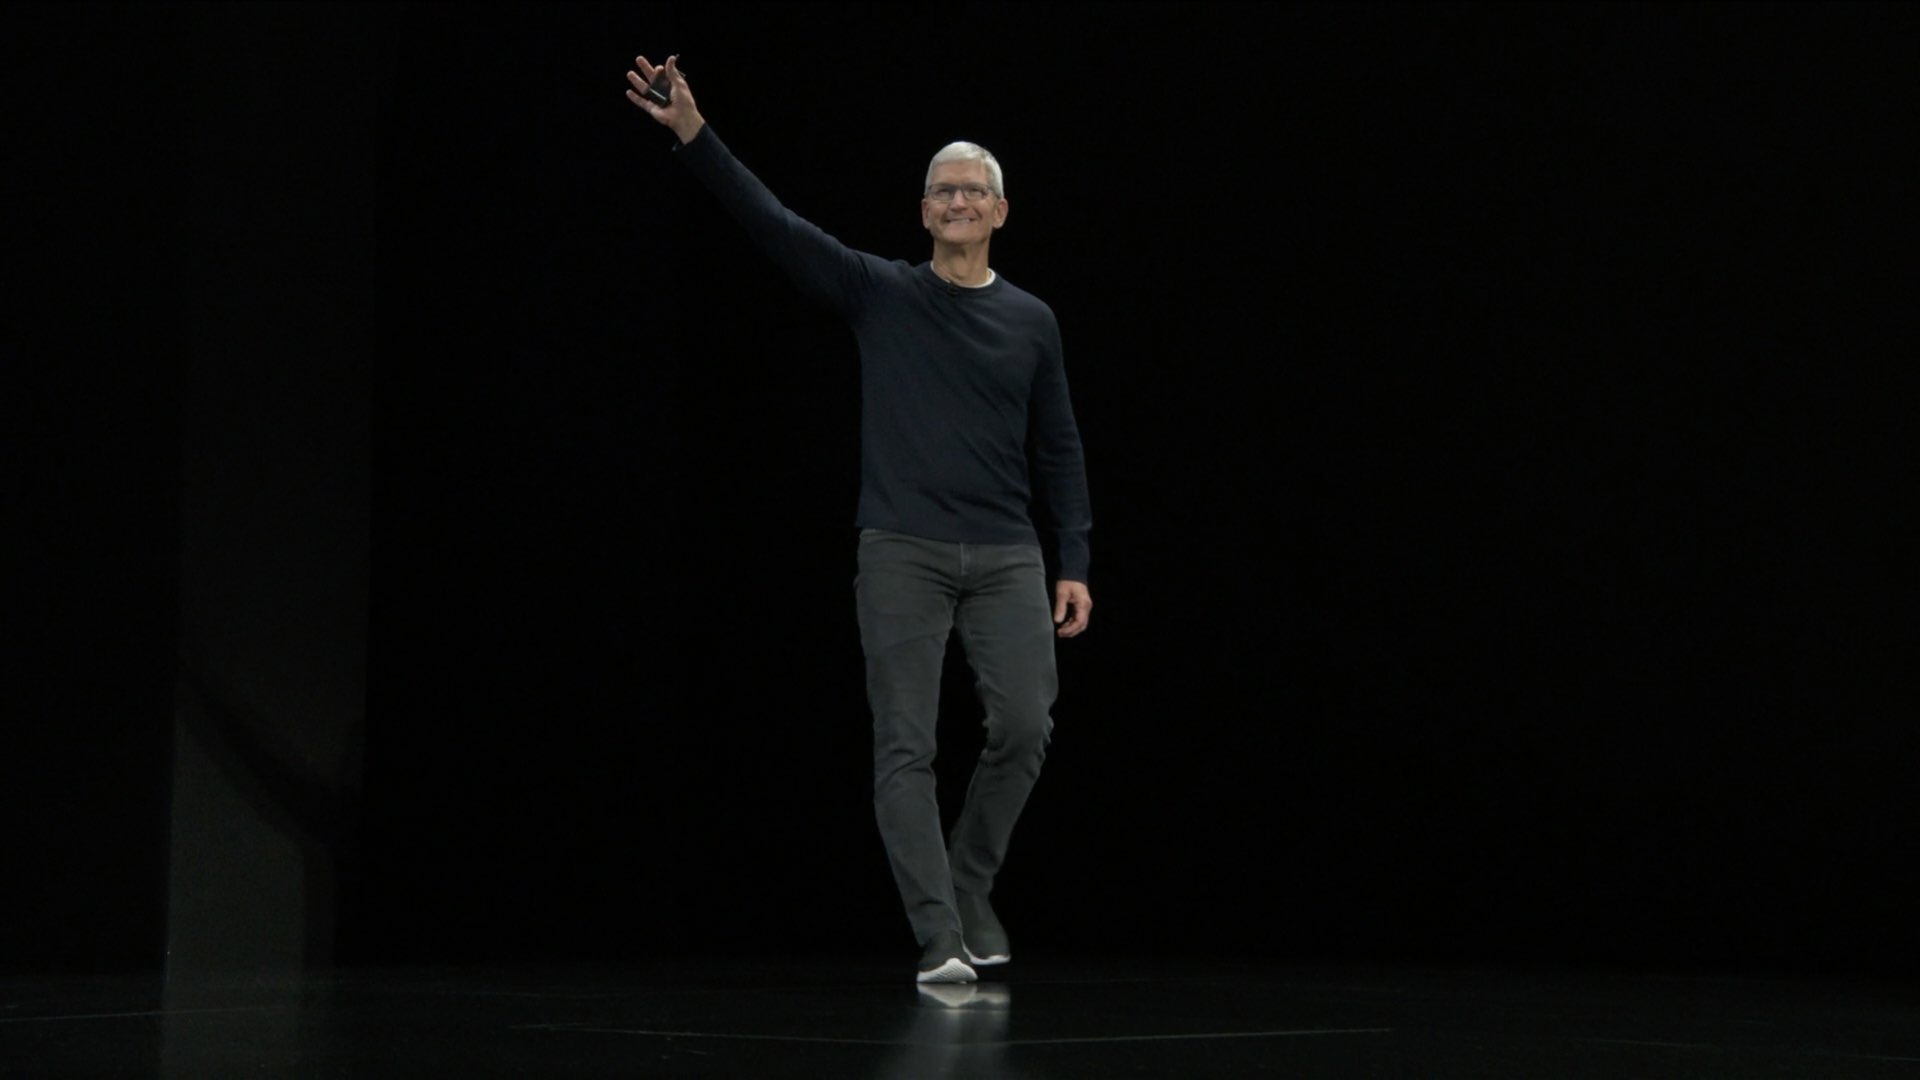 Tim Cook sube al escenario y saluda a la multitud en un evento de productos de Apple